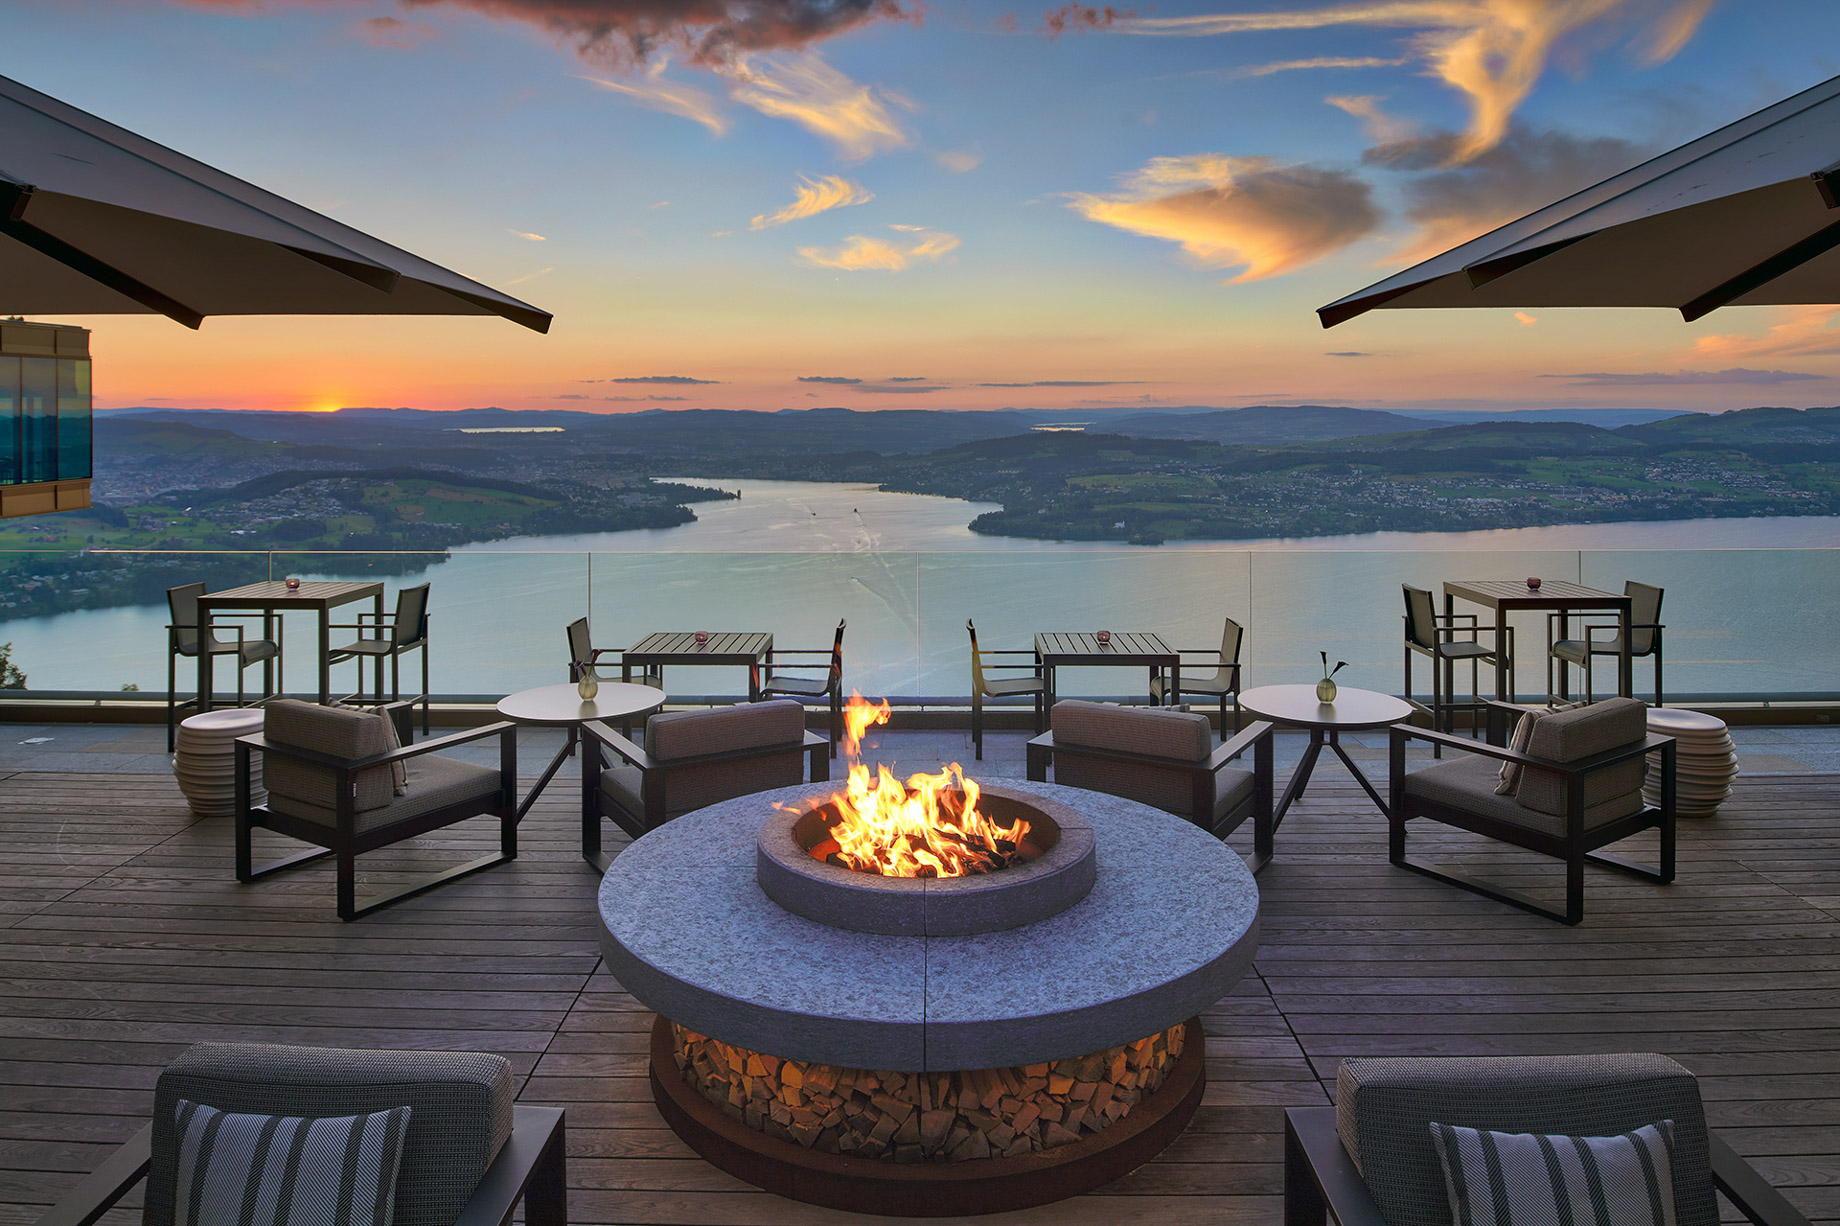 Burgenstock Hotel & Alpine Spa – Obburgen, Switzerland – Spices Kitchen & Terrace Restaurant Sunset Terrace View